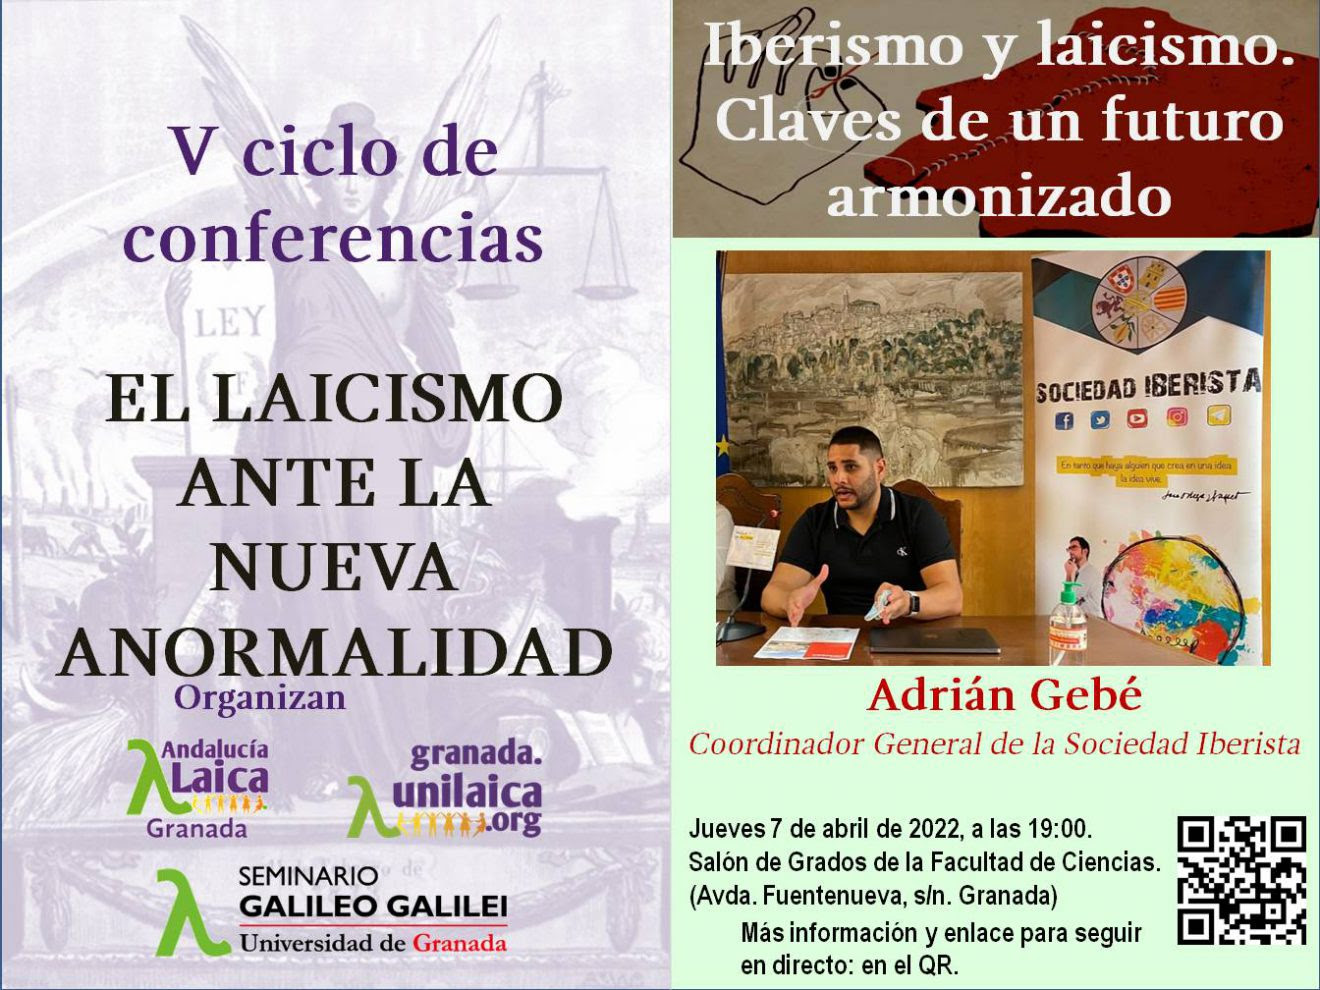 Granada Laica continúa su ciclo de conferencias mañana jueves 7 de abril dentro del Seminario Galileo Galilei: ＂Iberismo y laicismo. Claves de un futuro armonizado＂ por Adrián Gebé